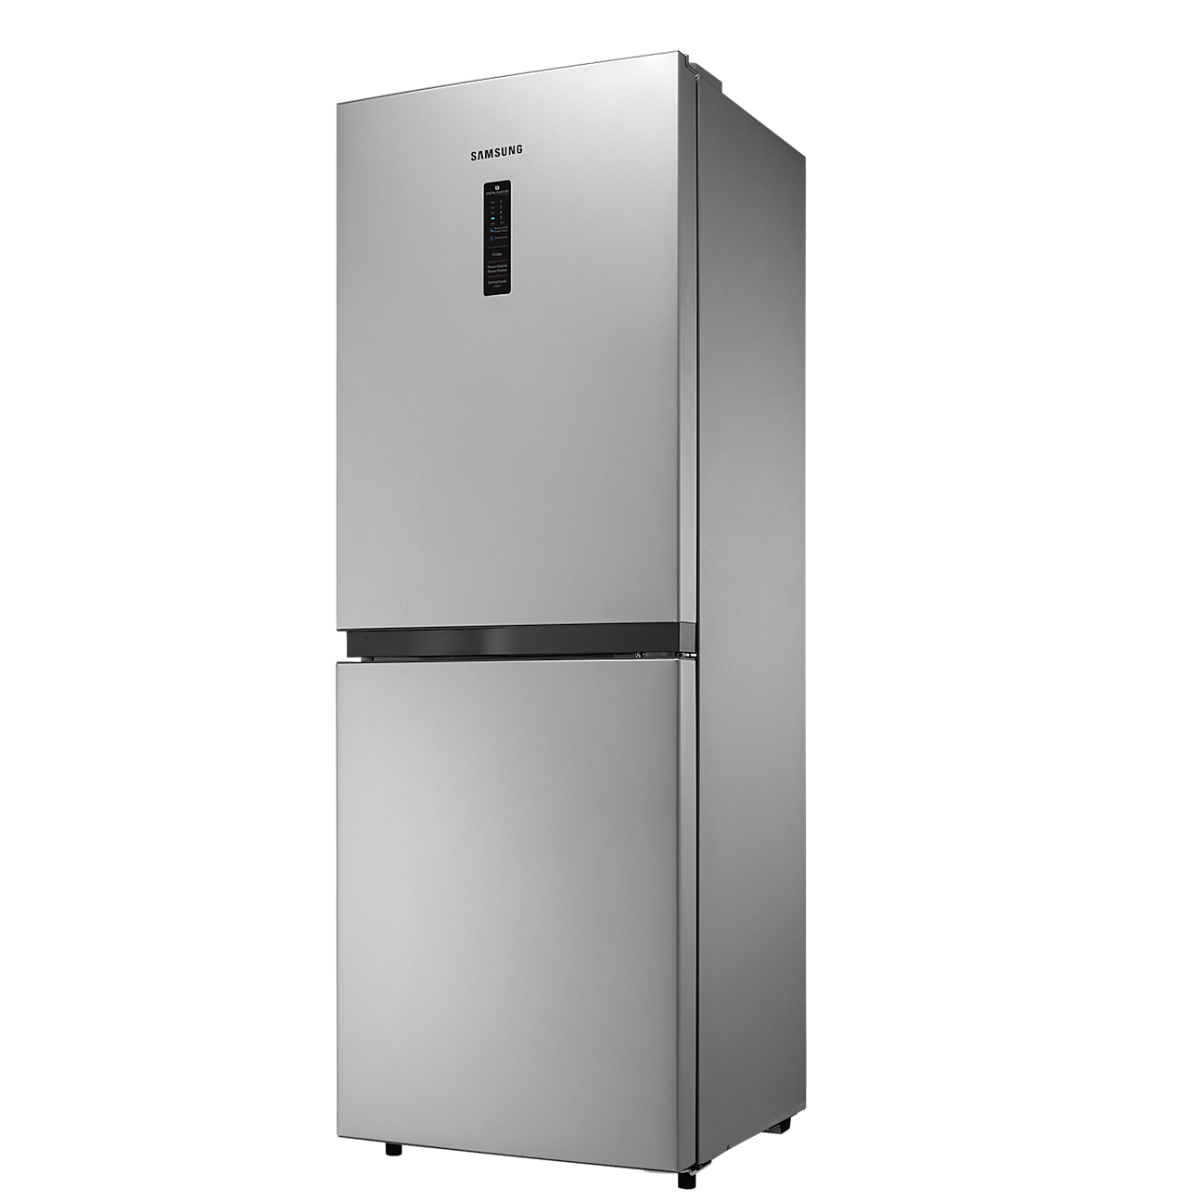 SAMSUNG 218 Liter Refrigerator with Digtial Inverter Technology RB21KMFH5SE/D3 , Best Refrigerators of Year, Top-rated Refrigerators, Refrigerator Reviews, Refrigerator Comparison, Buying a Refrigerator Guide, Refrigerator Deals and Offers Best Refrigerators of Year, Top-rated Refrigerators, Refrigerator Reviews, Refrigerator Comparison, Buying a Refrigerator Guide, Refrigerator Deals and Offers, Best refrigerators in Chittagong, Best selling refrigerators in Chittagong, Best Electronics Store in Chittagong, Meem Electronics, MeemElectronics, Best Deal of Refrigerator, SAMSUNG Refrigerator price in Chittagong, SAMSUNG Refrigerator price in Bangladersh, 218 Liter Refrigerator, SAMSUNG Refrigerator, 01919382008, 01919382009, 019193820010